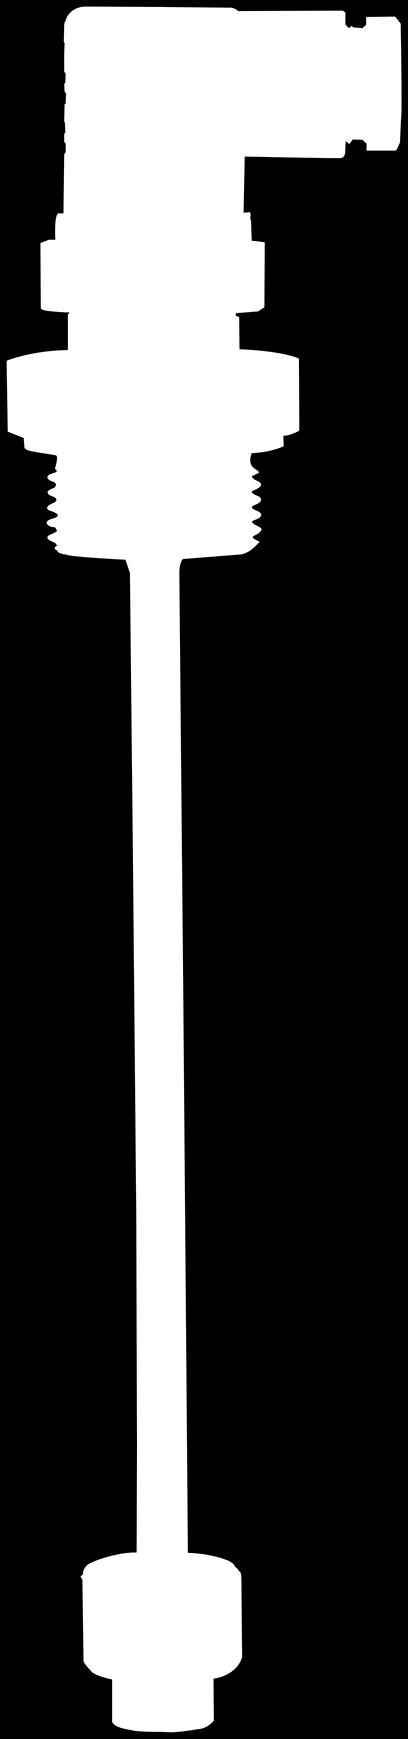 esquerda: Montagem rosqueada, conector angular, boia conforme NBR Fig.